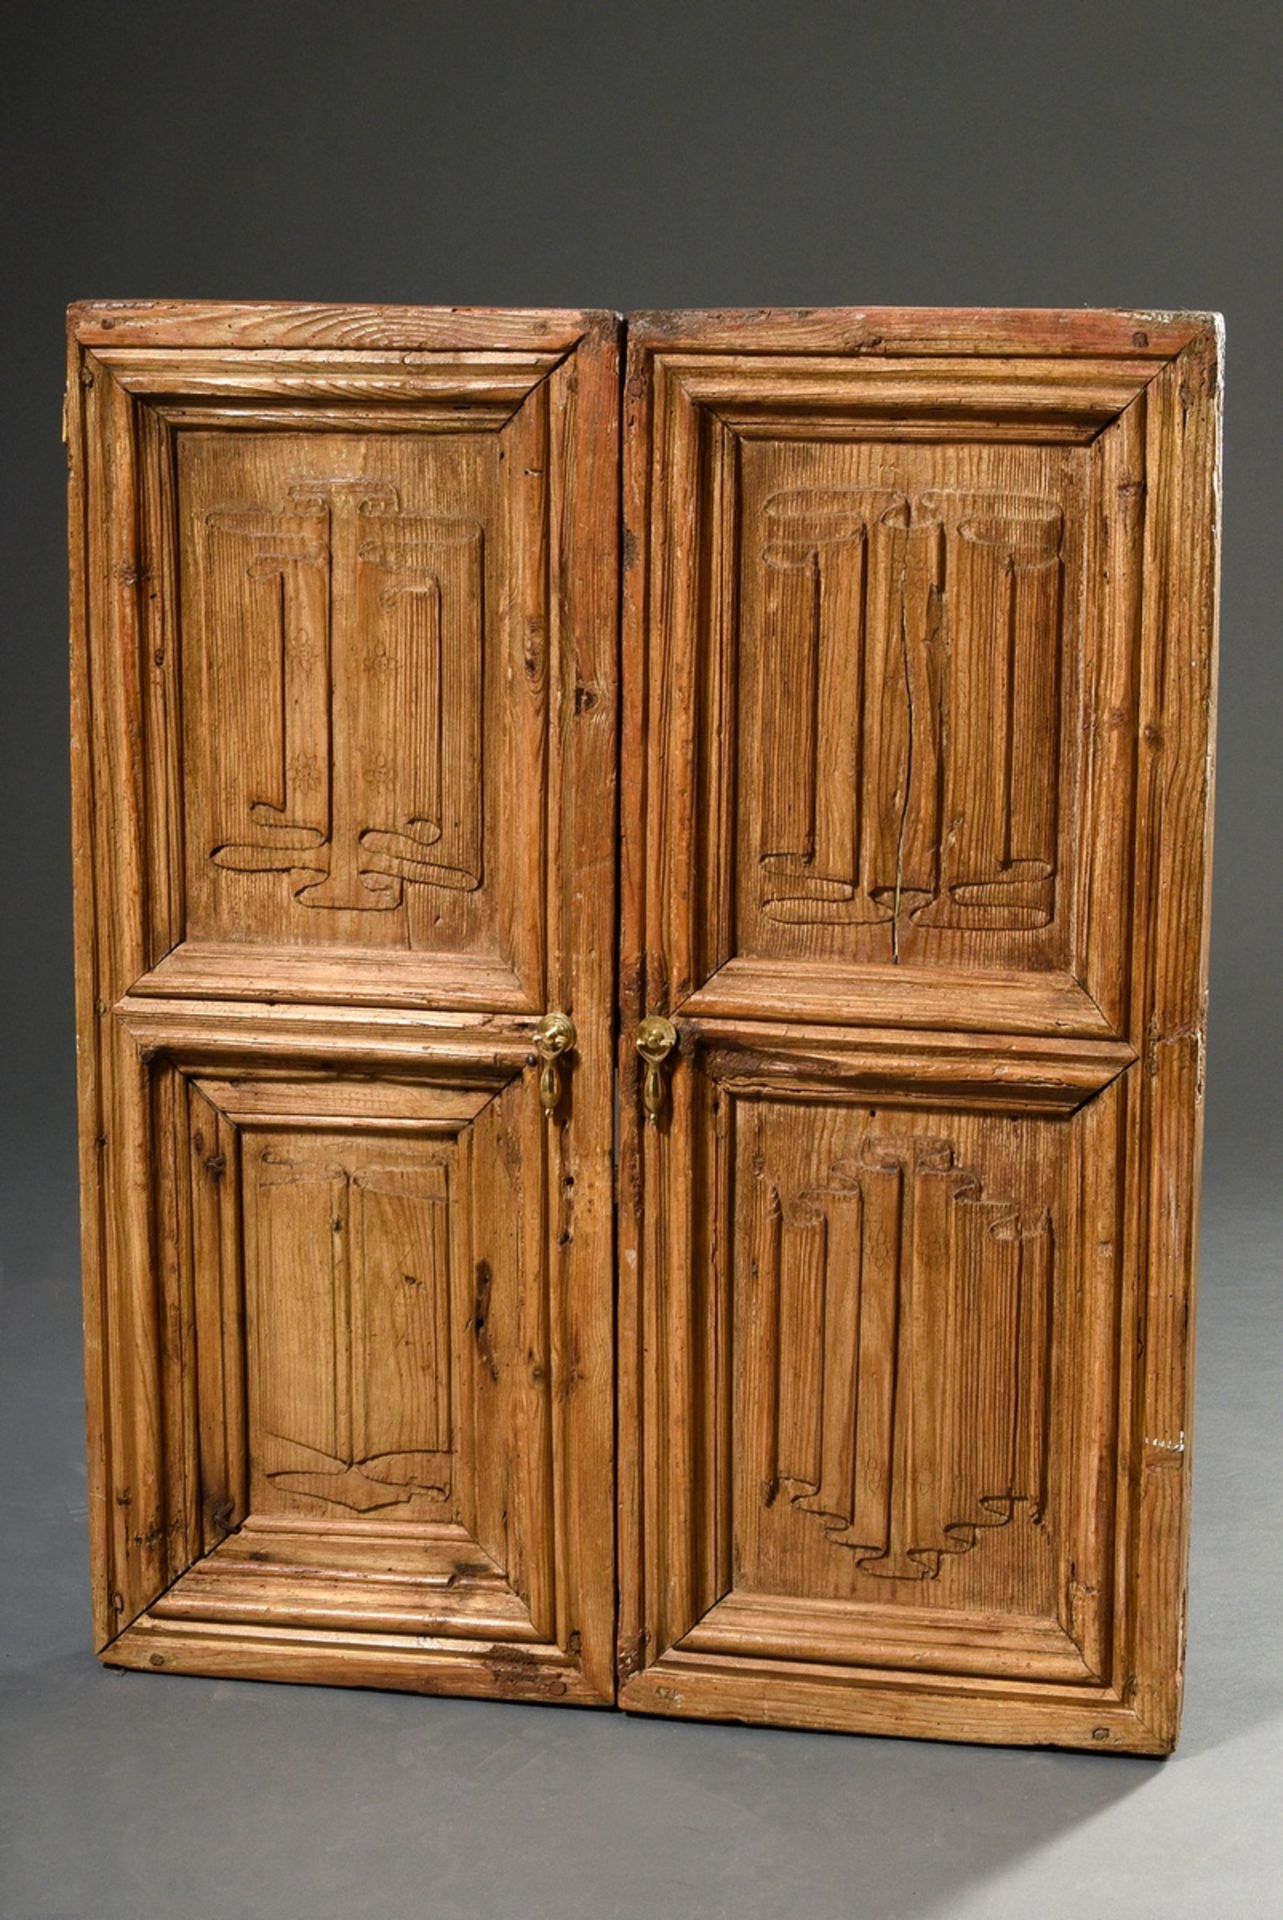 2 Eichen Türen mit Faltwerk Reliefschnitzereien in gotischer Façon in den Füllungen, Nadelholz, Mes